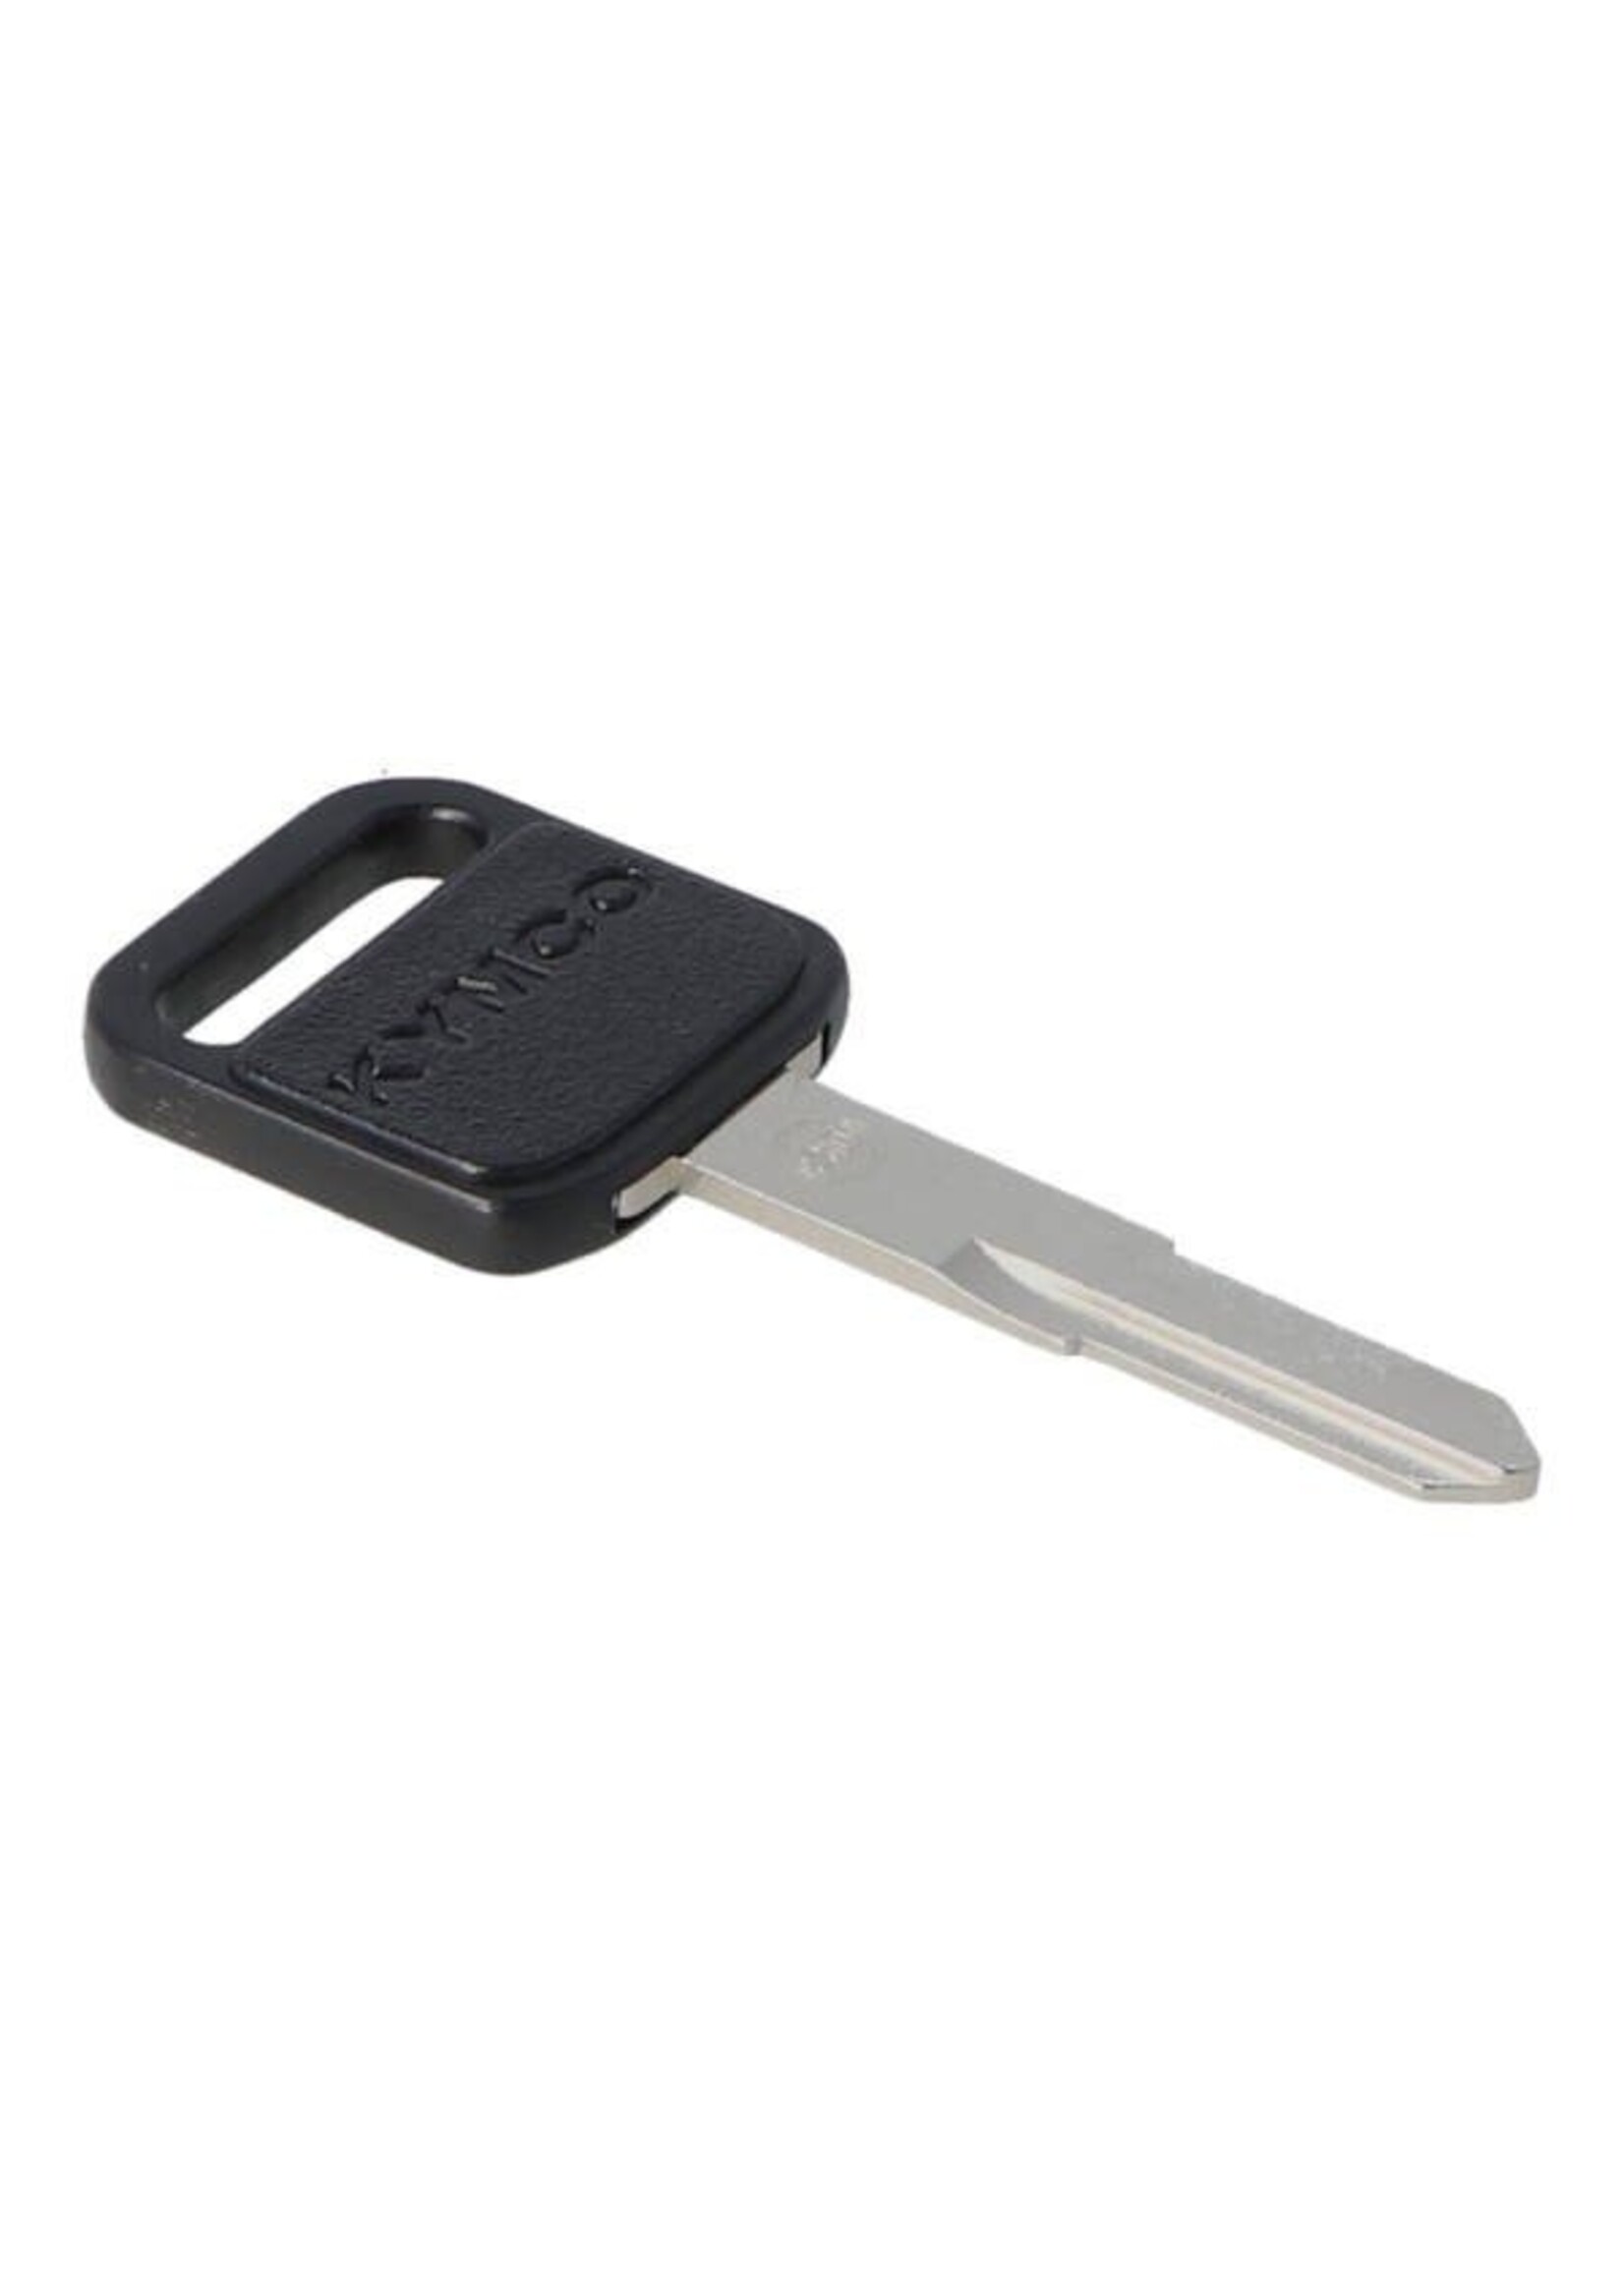 sleutel blind grand dink/new dink/peop-s/sento/vp50 rechts kymco orig 35111-khc5-306-m1